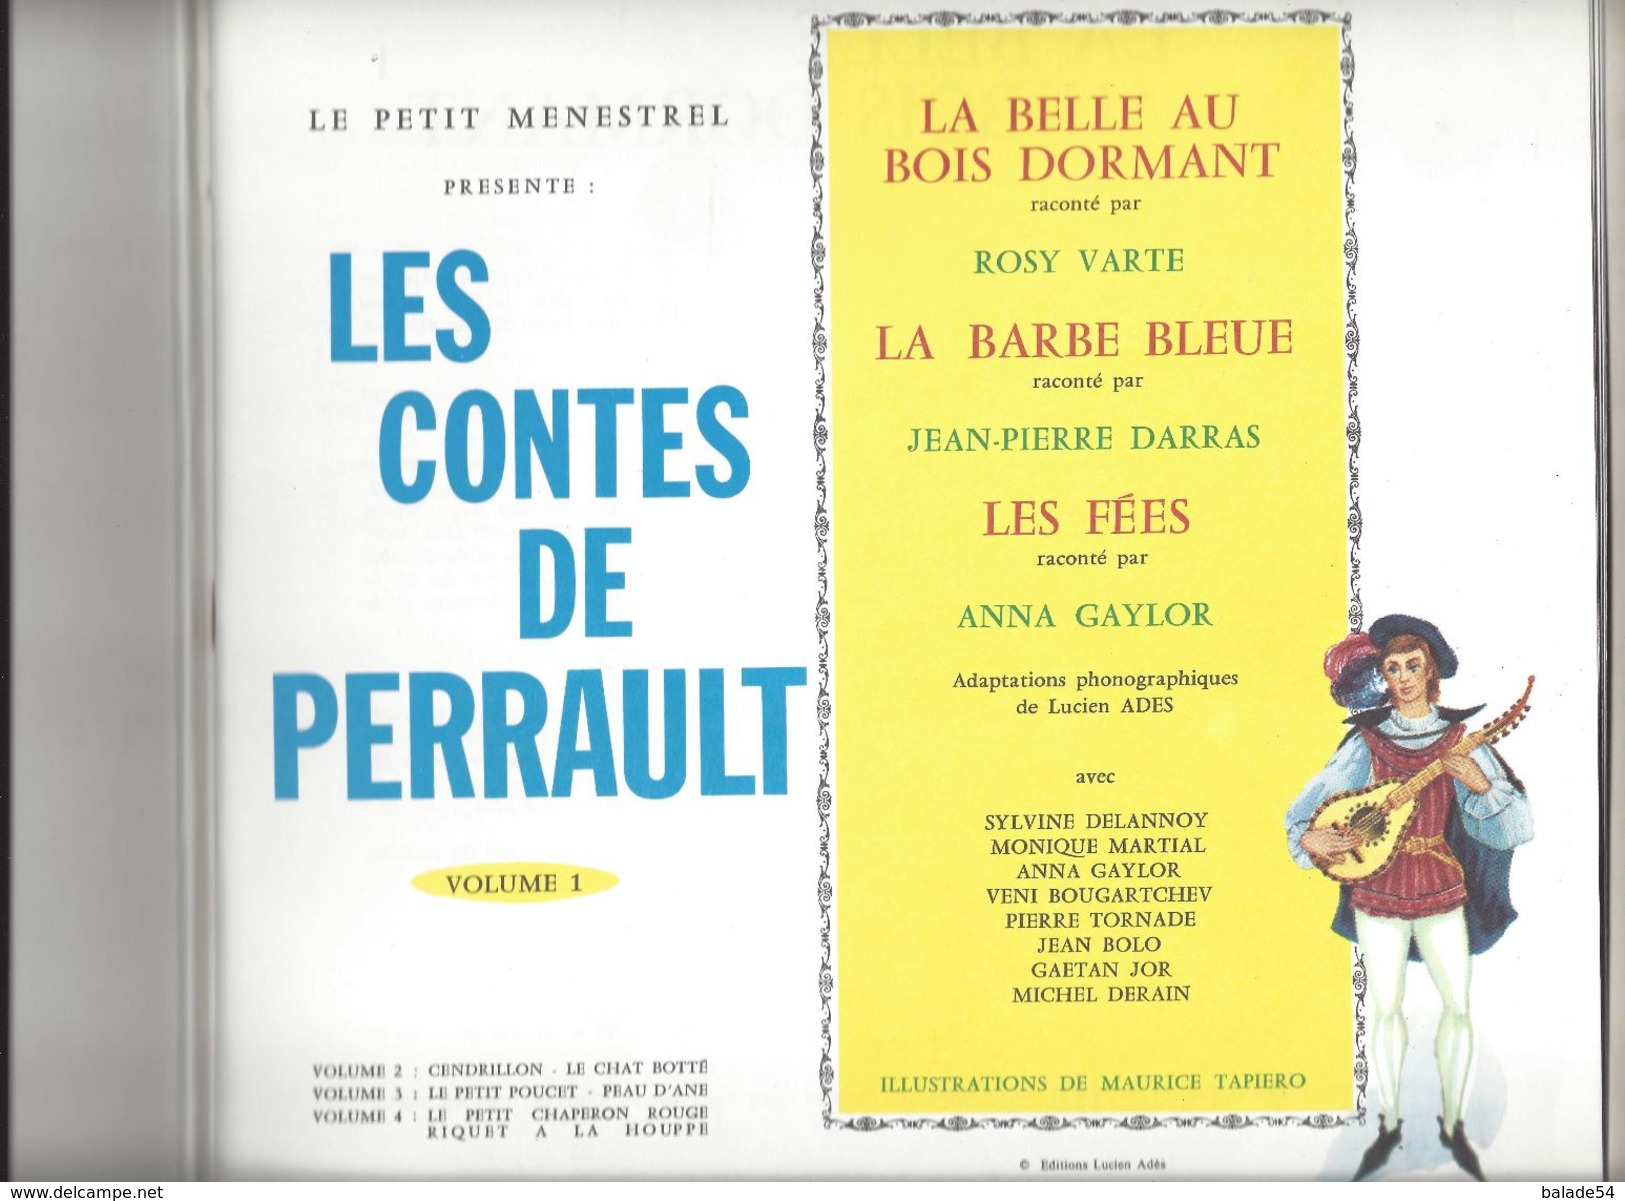 LIVRE - DISQUE "Le Petit Ménestrel" La Belle Au Bois Dormant / La Barbe Bleue / Les Fées Volume 1 - 1973 - Children